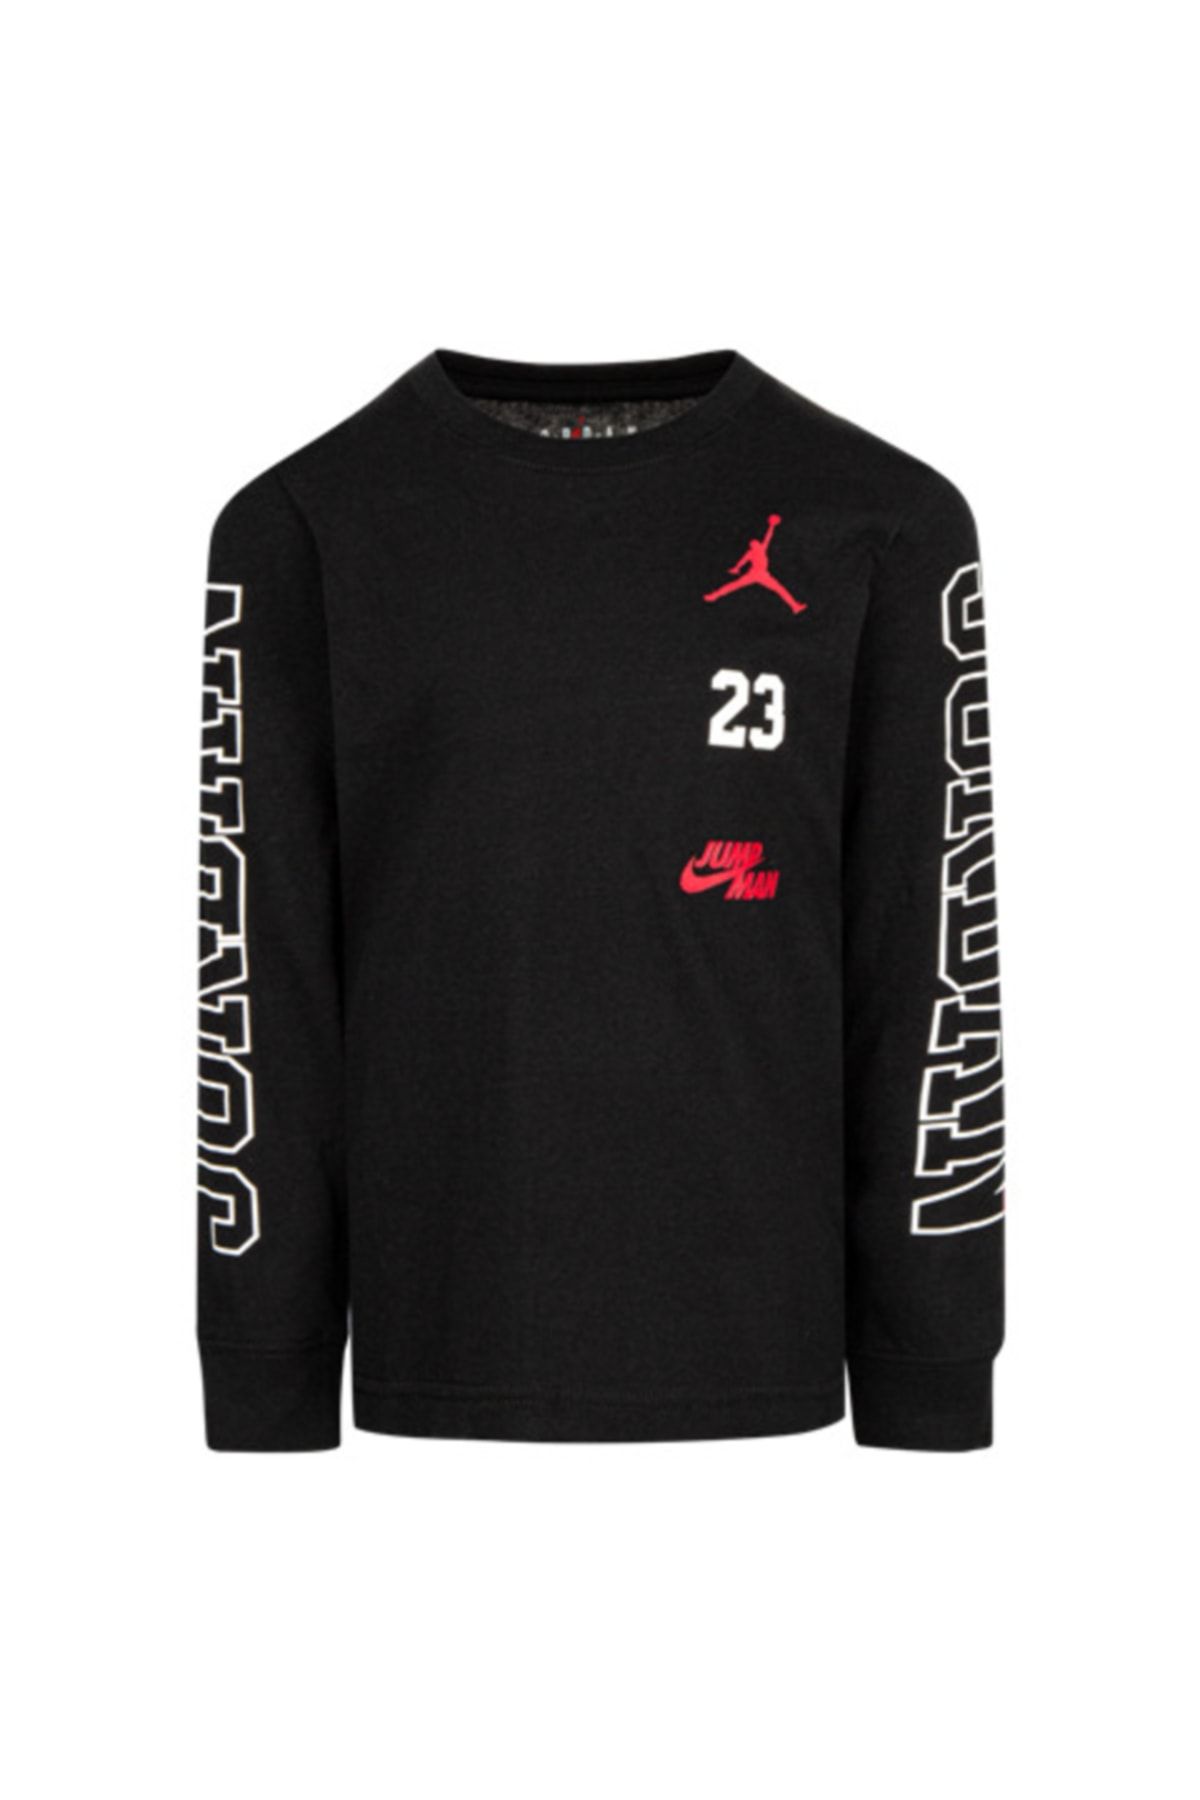 Nike Jordan Jdb Jordan Swıtch Ls Tee Erkek Çocuk Sweatshırt 85b254-023